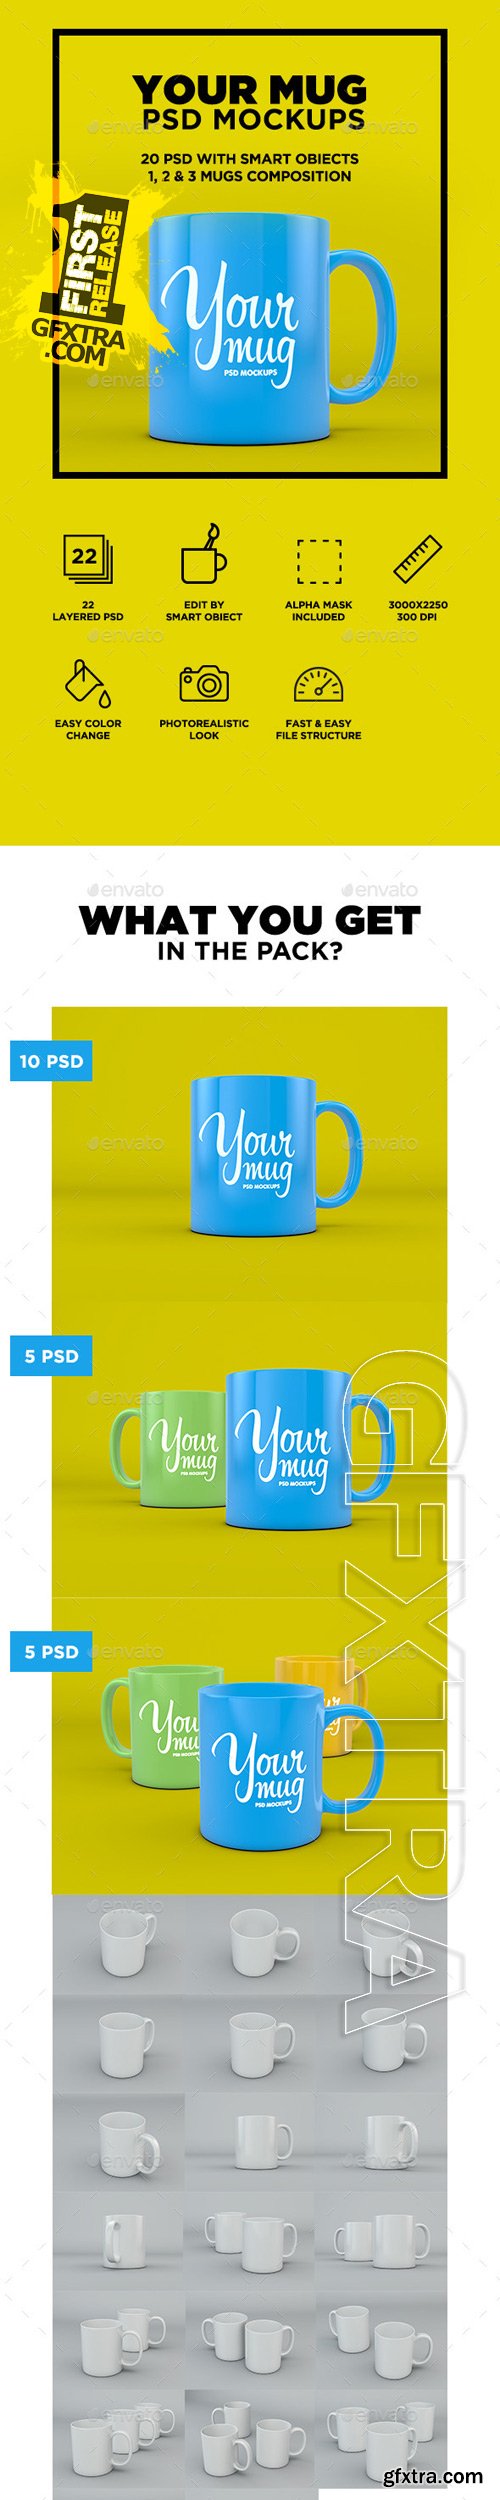 GraphicRiver - Your Mug - PSD Mockup